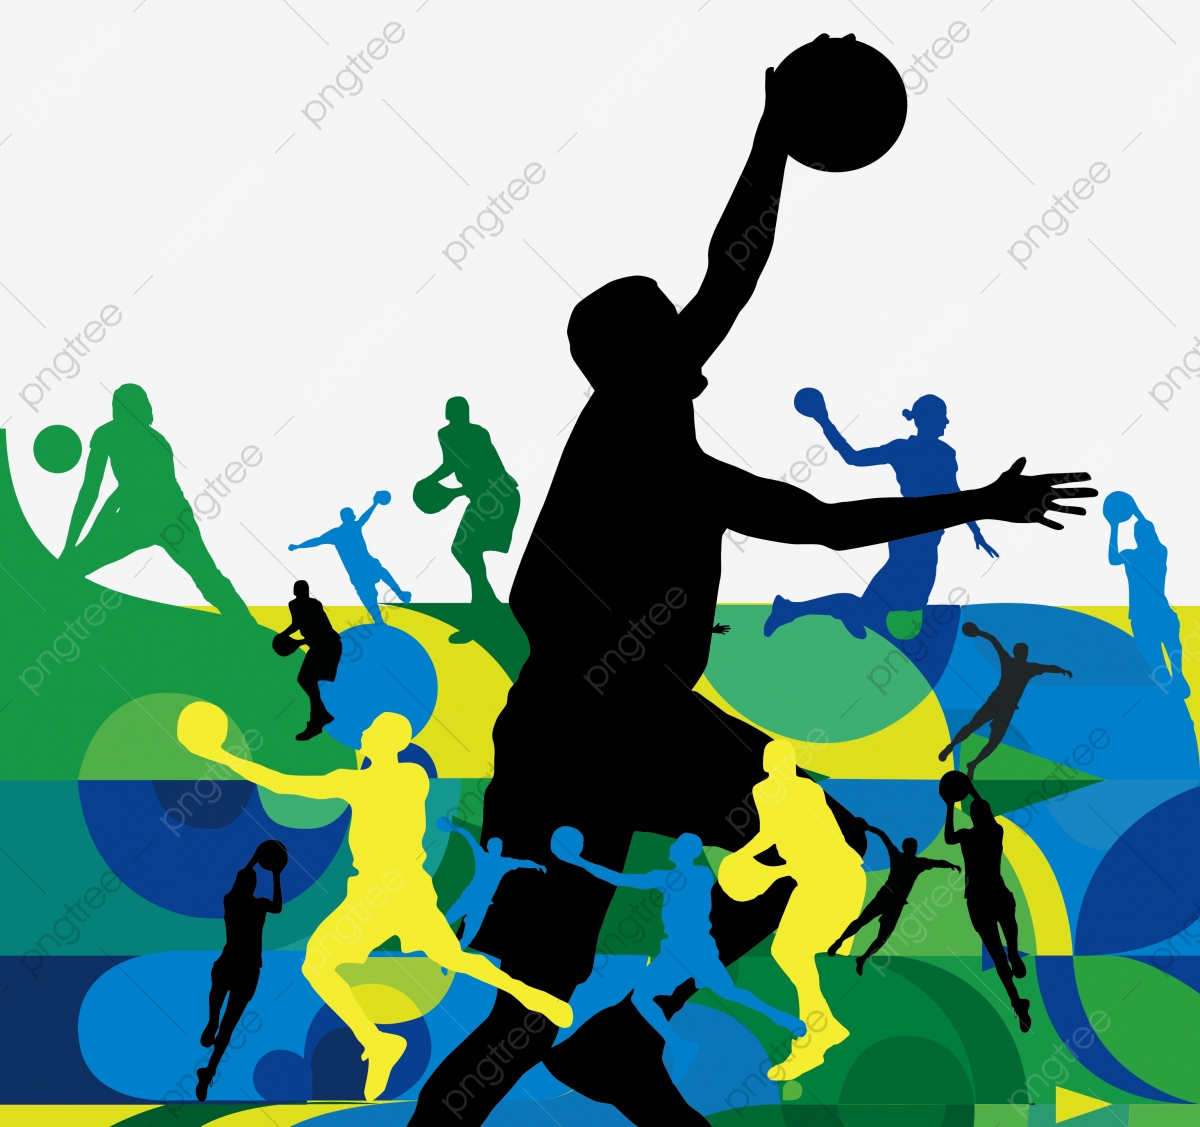 Basketball Characters Playing Basketball Silhouette, Basketball.